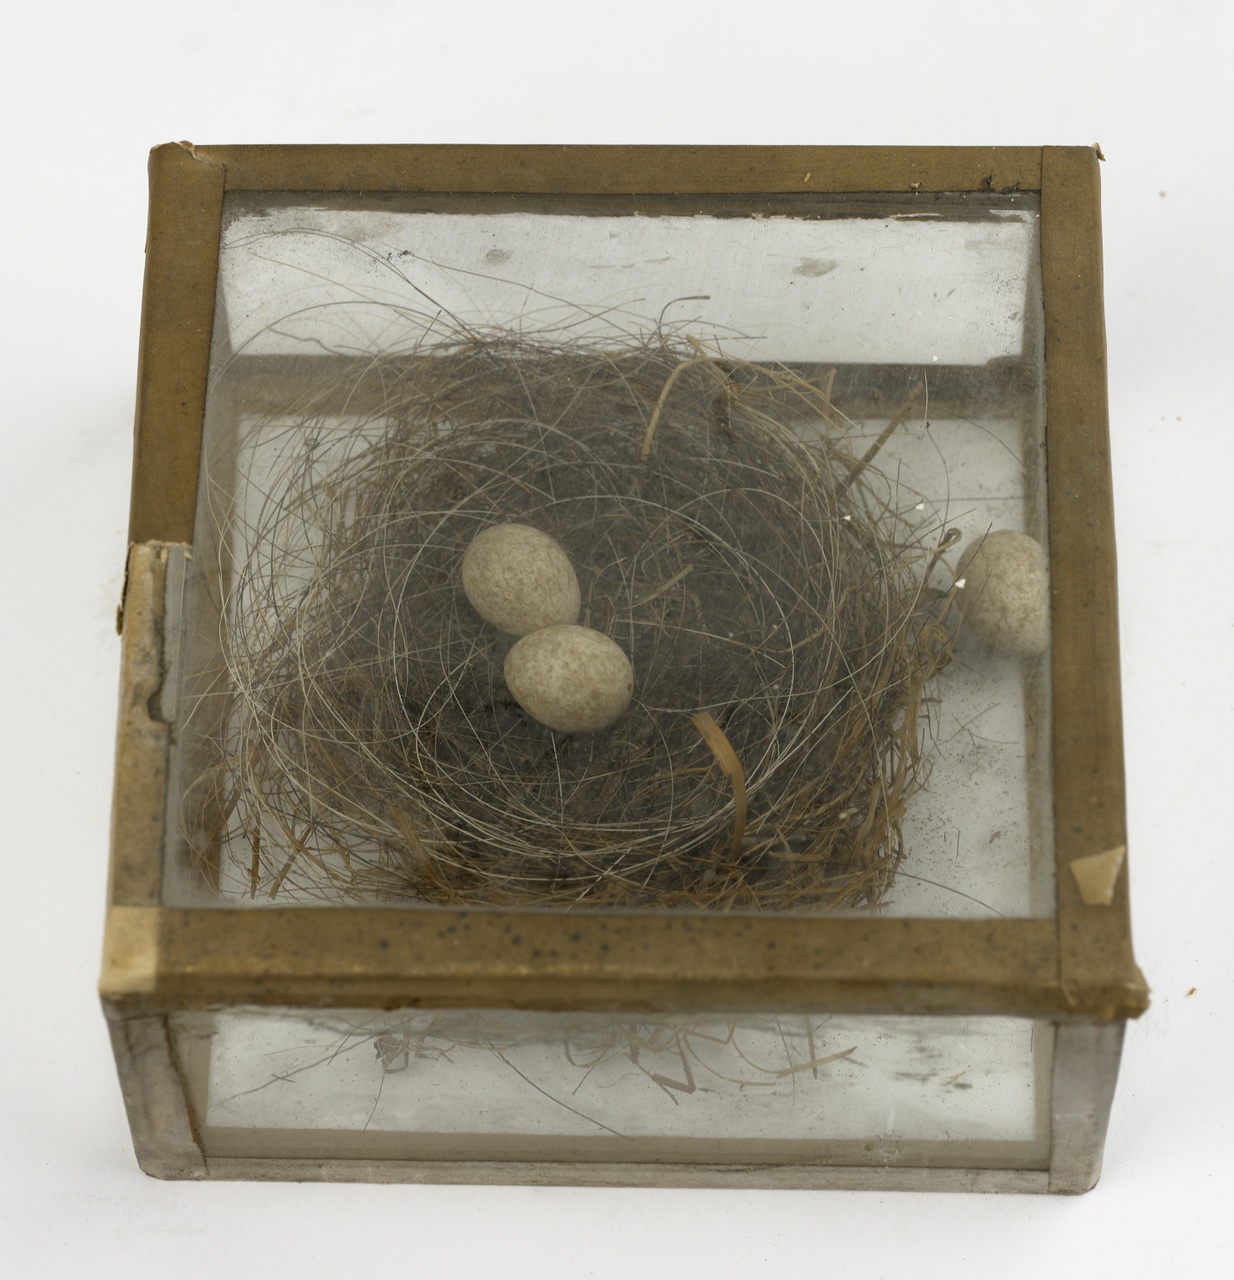 Nest met drie eieren